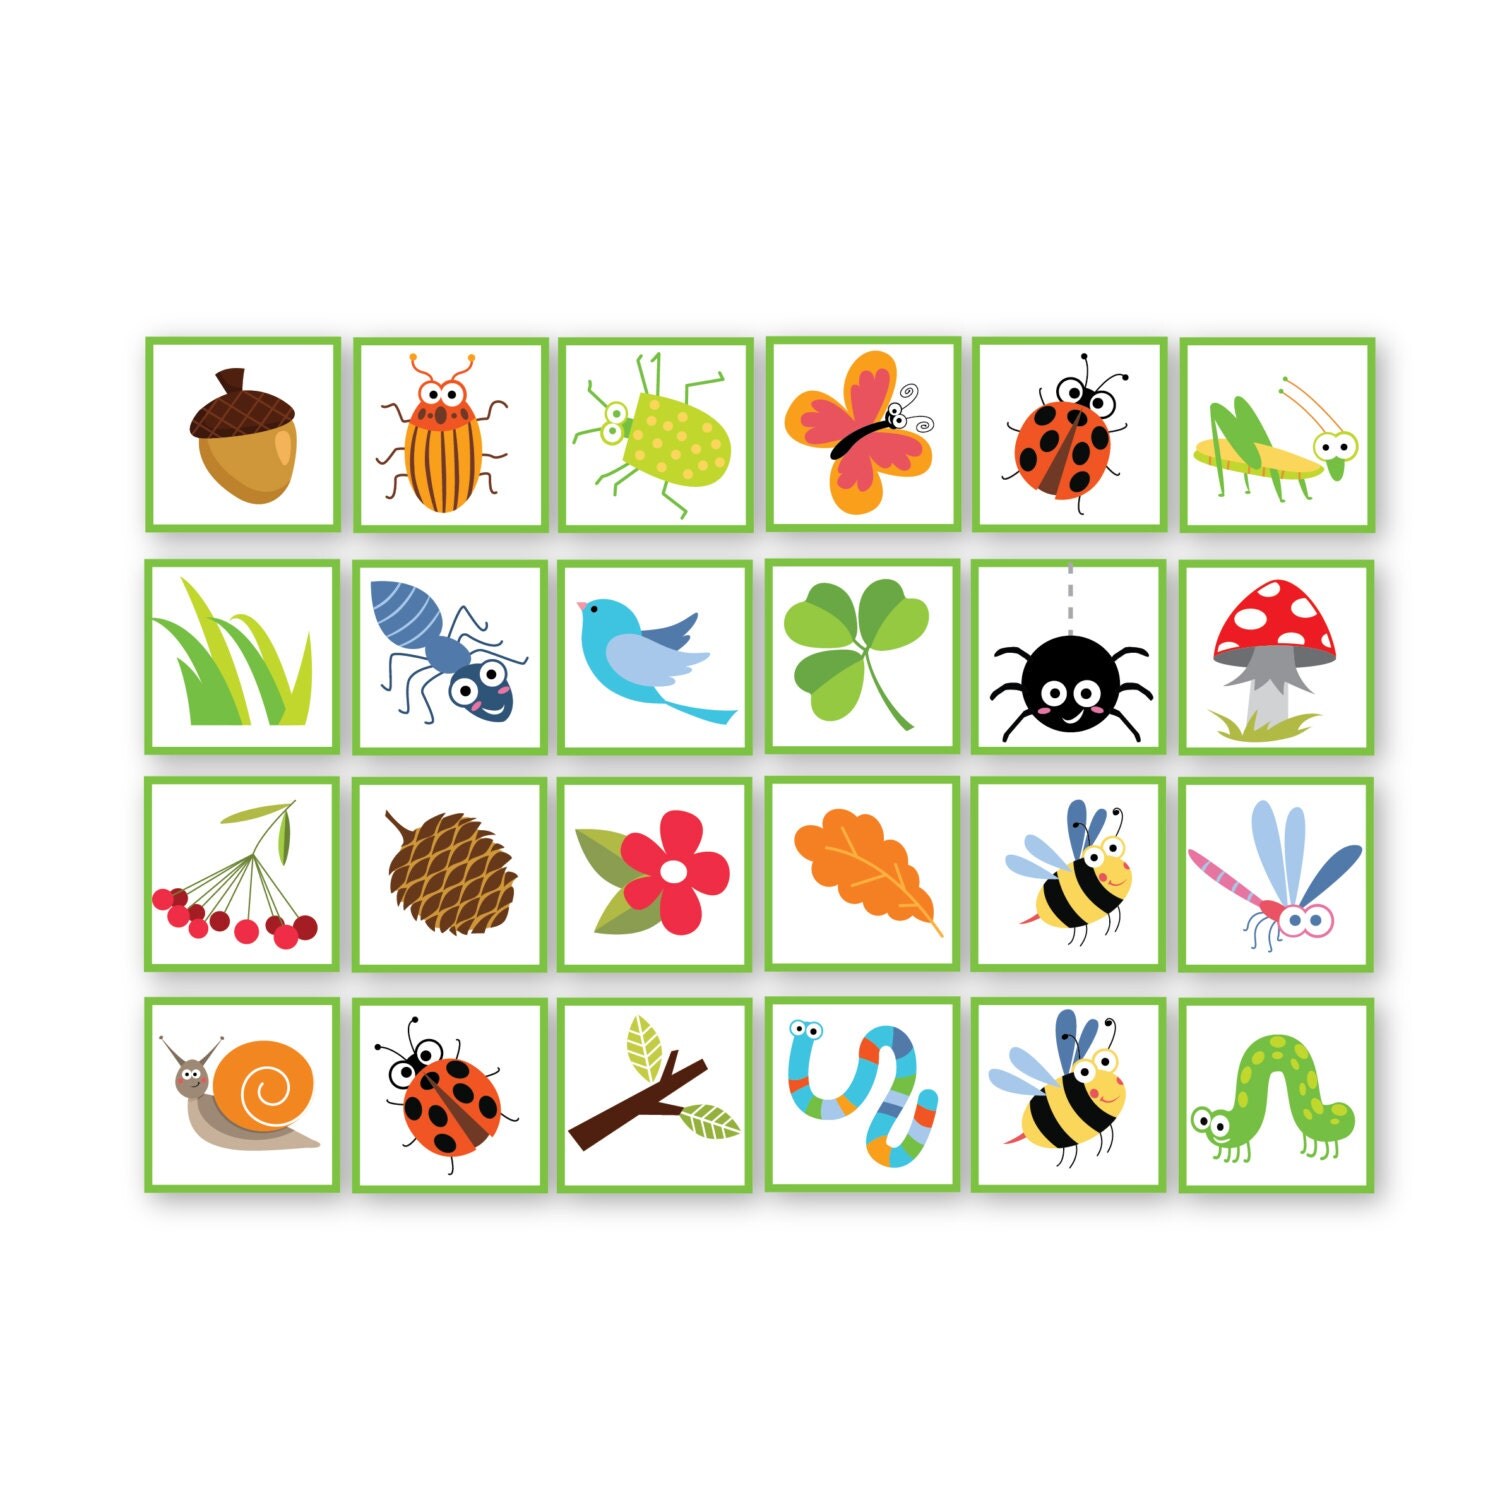 bug-bingo-game-kid-s-printable-bingo-game-bingo-game-for-kids-bug